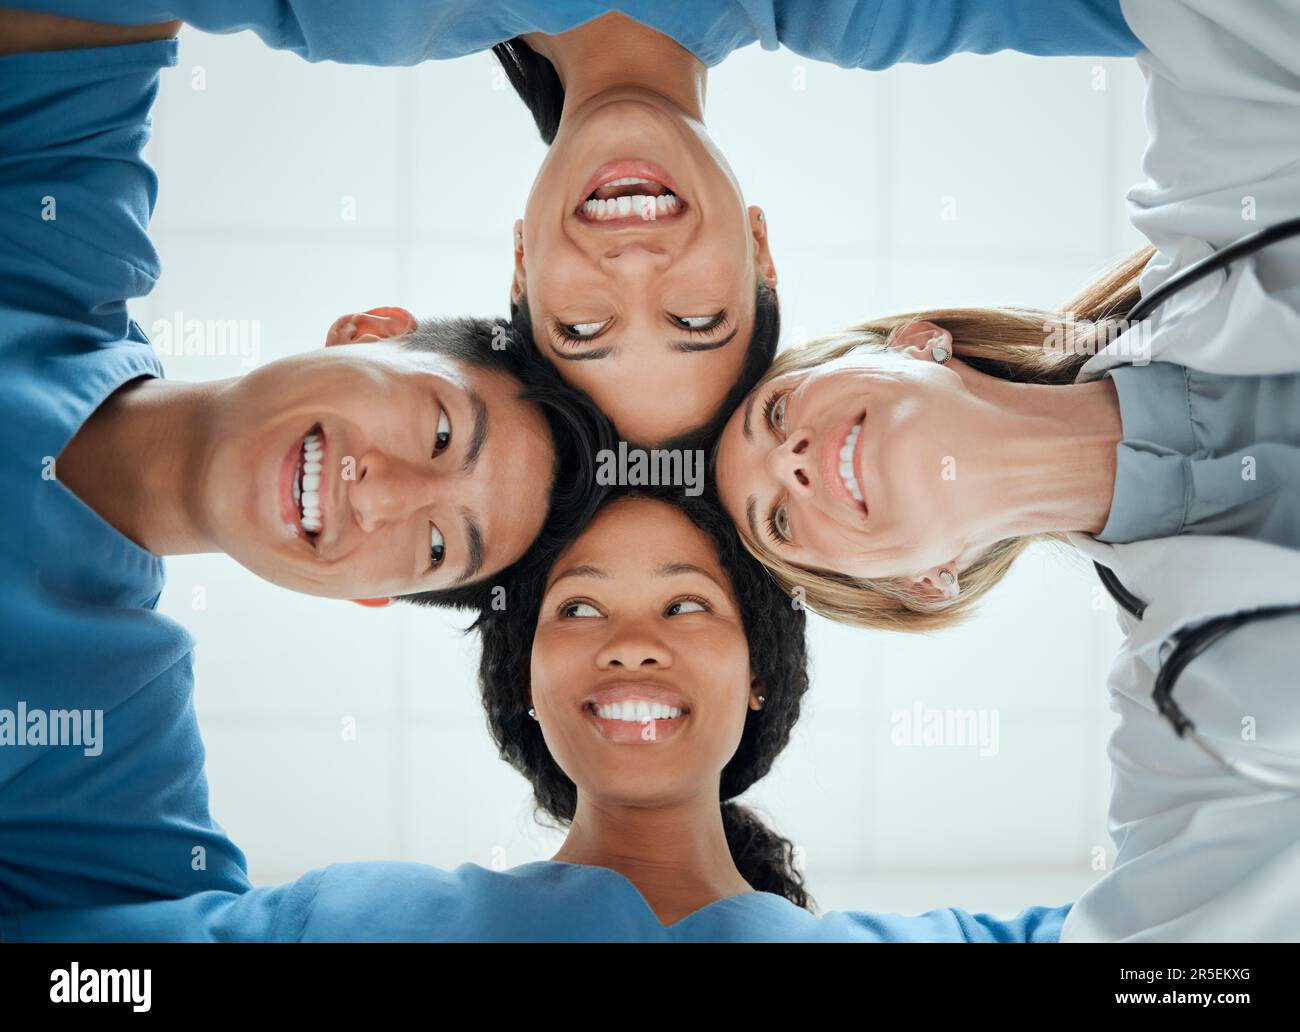 Glückliche Teamarbeit oder Gesichter von Ärzten, die mit einem Lächeln zusammenarbeiten, um Ziele im Gesundheitswesen zu erreichen. Lächeln, Teambildung oder schwacher Winkel von Schwestern Stockfoto